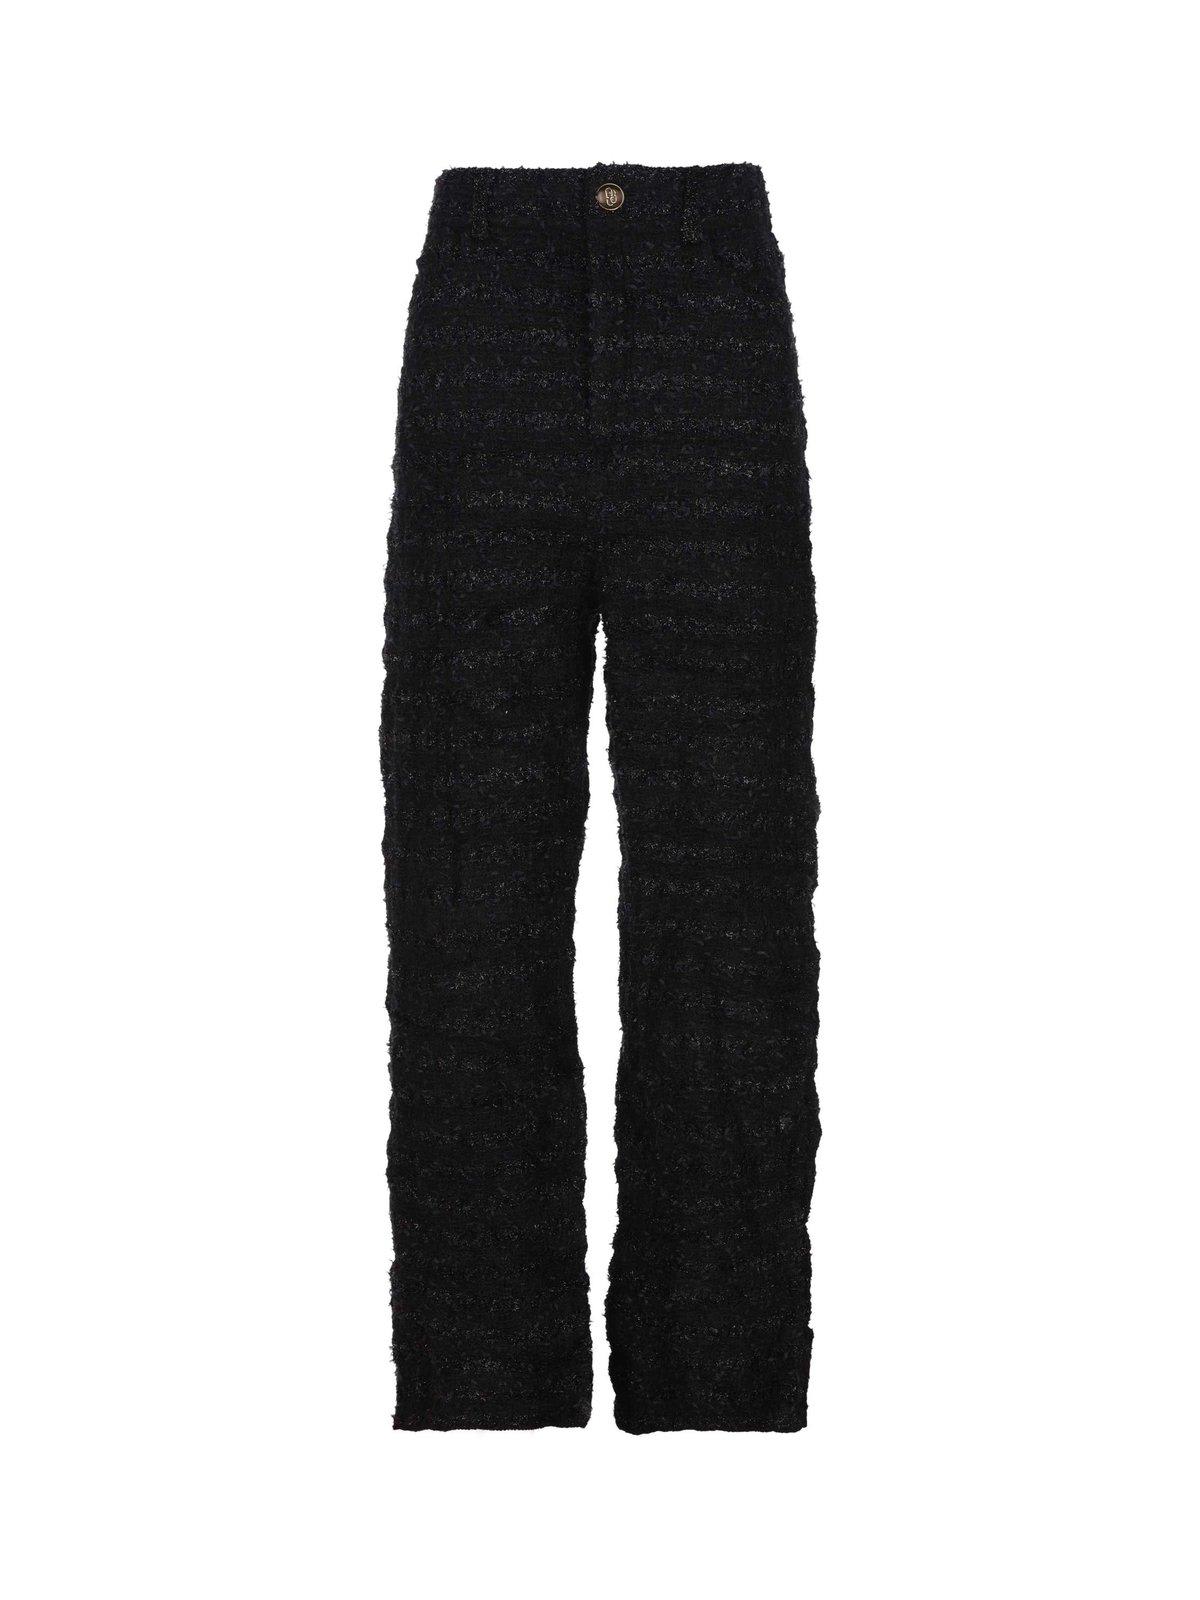 Balenciaga Tweed Metallic Thread Trousers